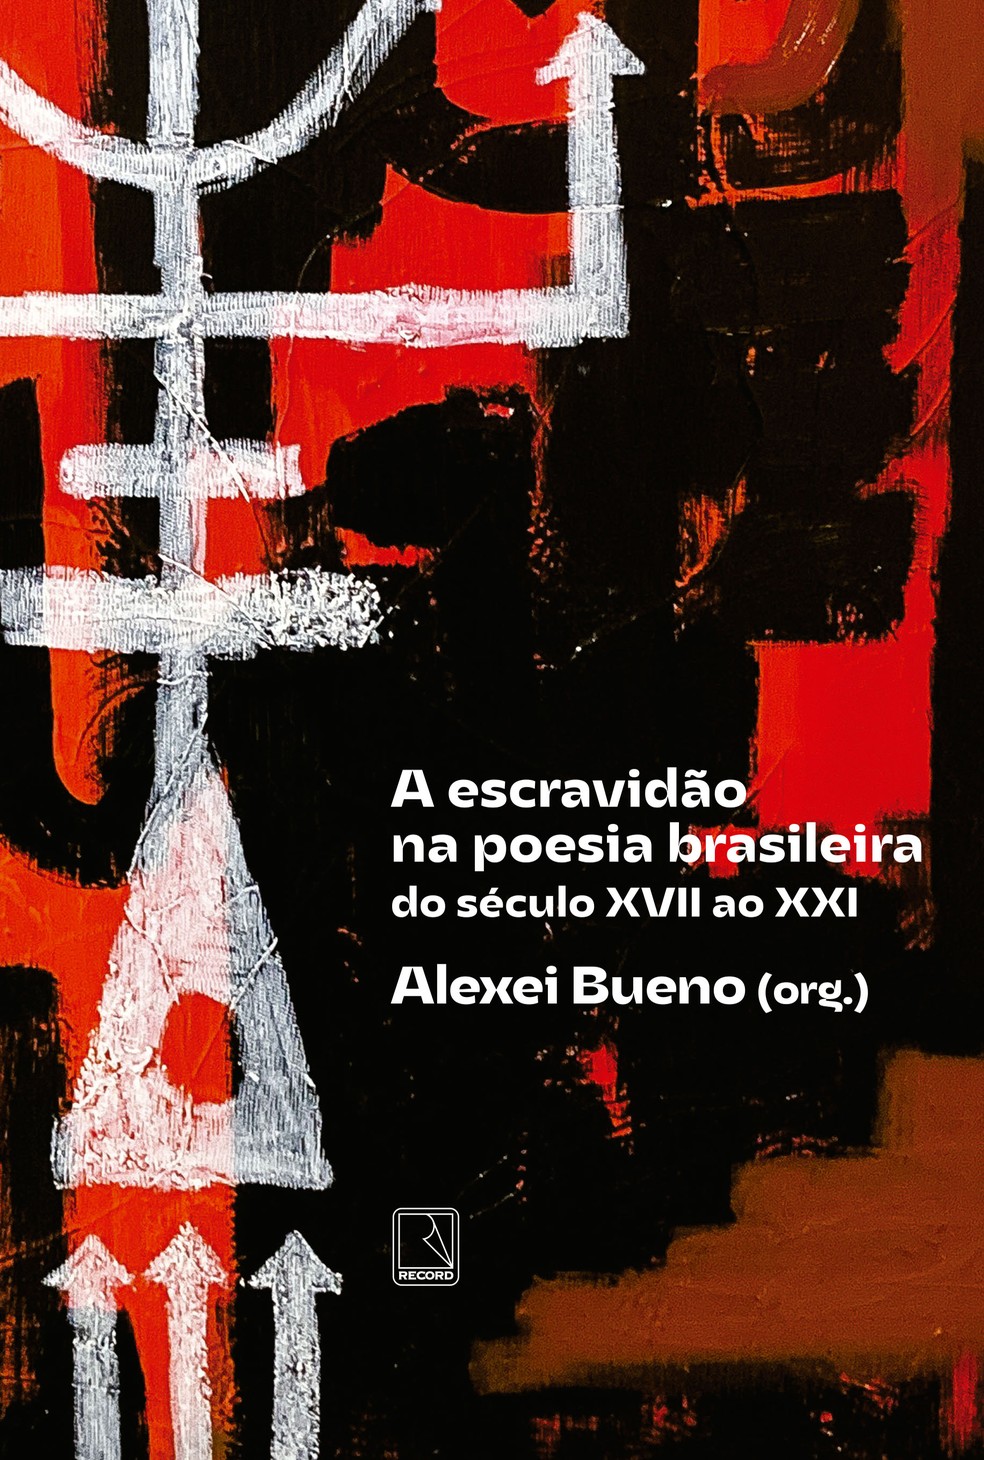 Capa da antologia "A escravidão na poesia brasileira: do século XVII ao XXI", organizada por Alexei Bueno e publicada pela Record — Foto: Divulgação